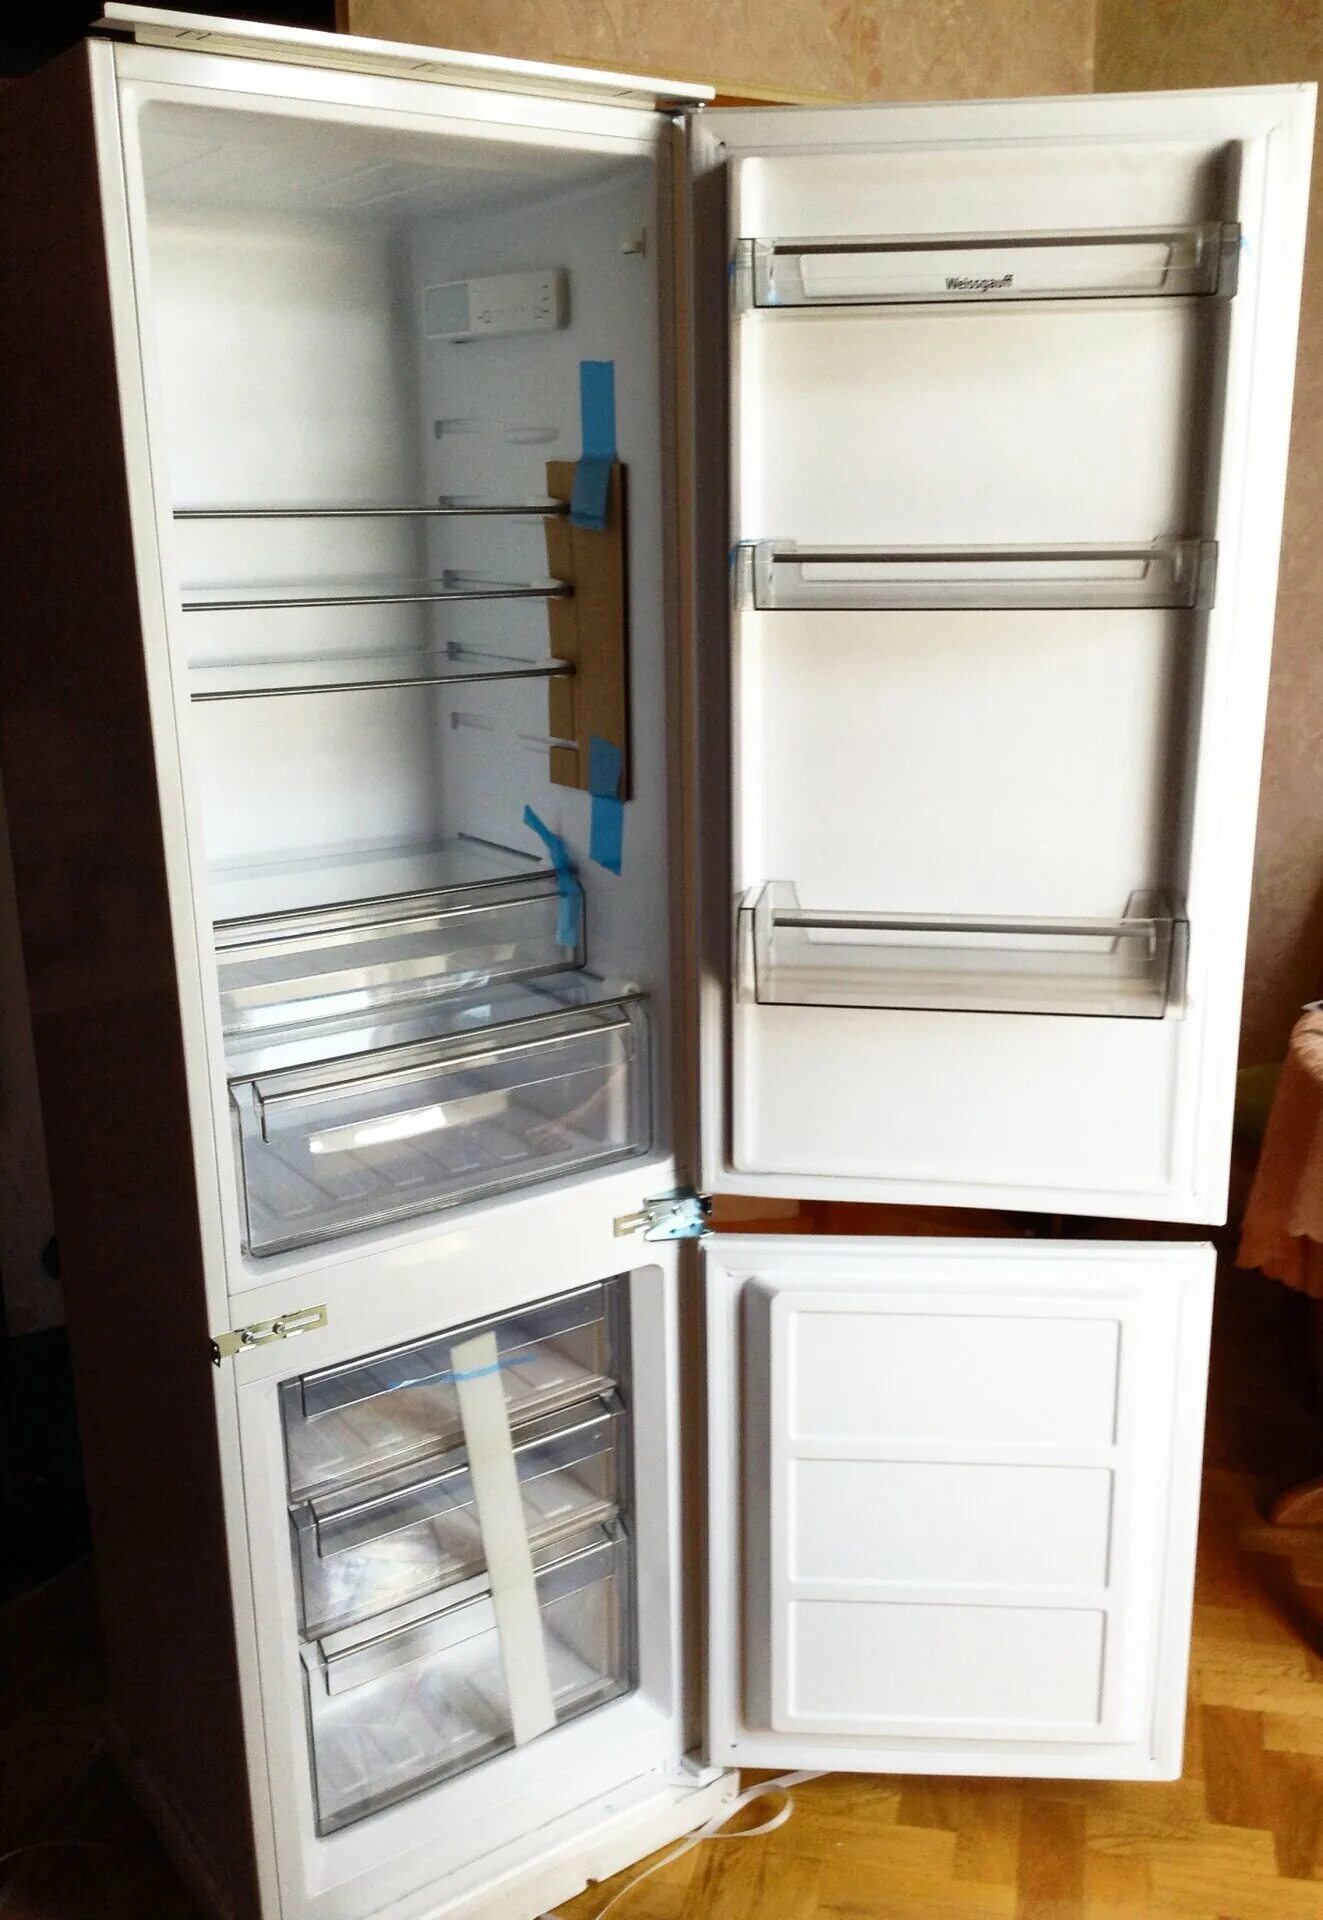 Weissgauff wrki 2801 md. Weissgauff холодильник встраиваемый WRKI 2801. Холодильник Weissgauff WRKI 2801 MD. Встроенный холодильник Weissgauff WRKI 2801 MD. WRKI 2801 MD.